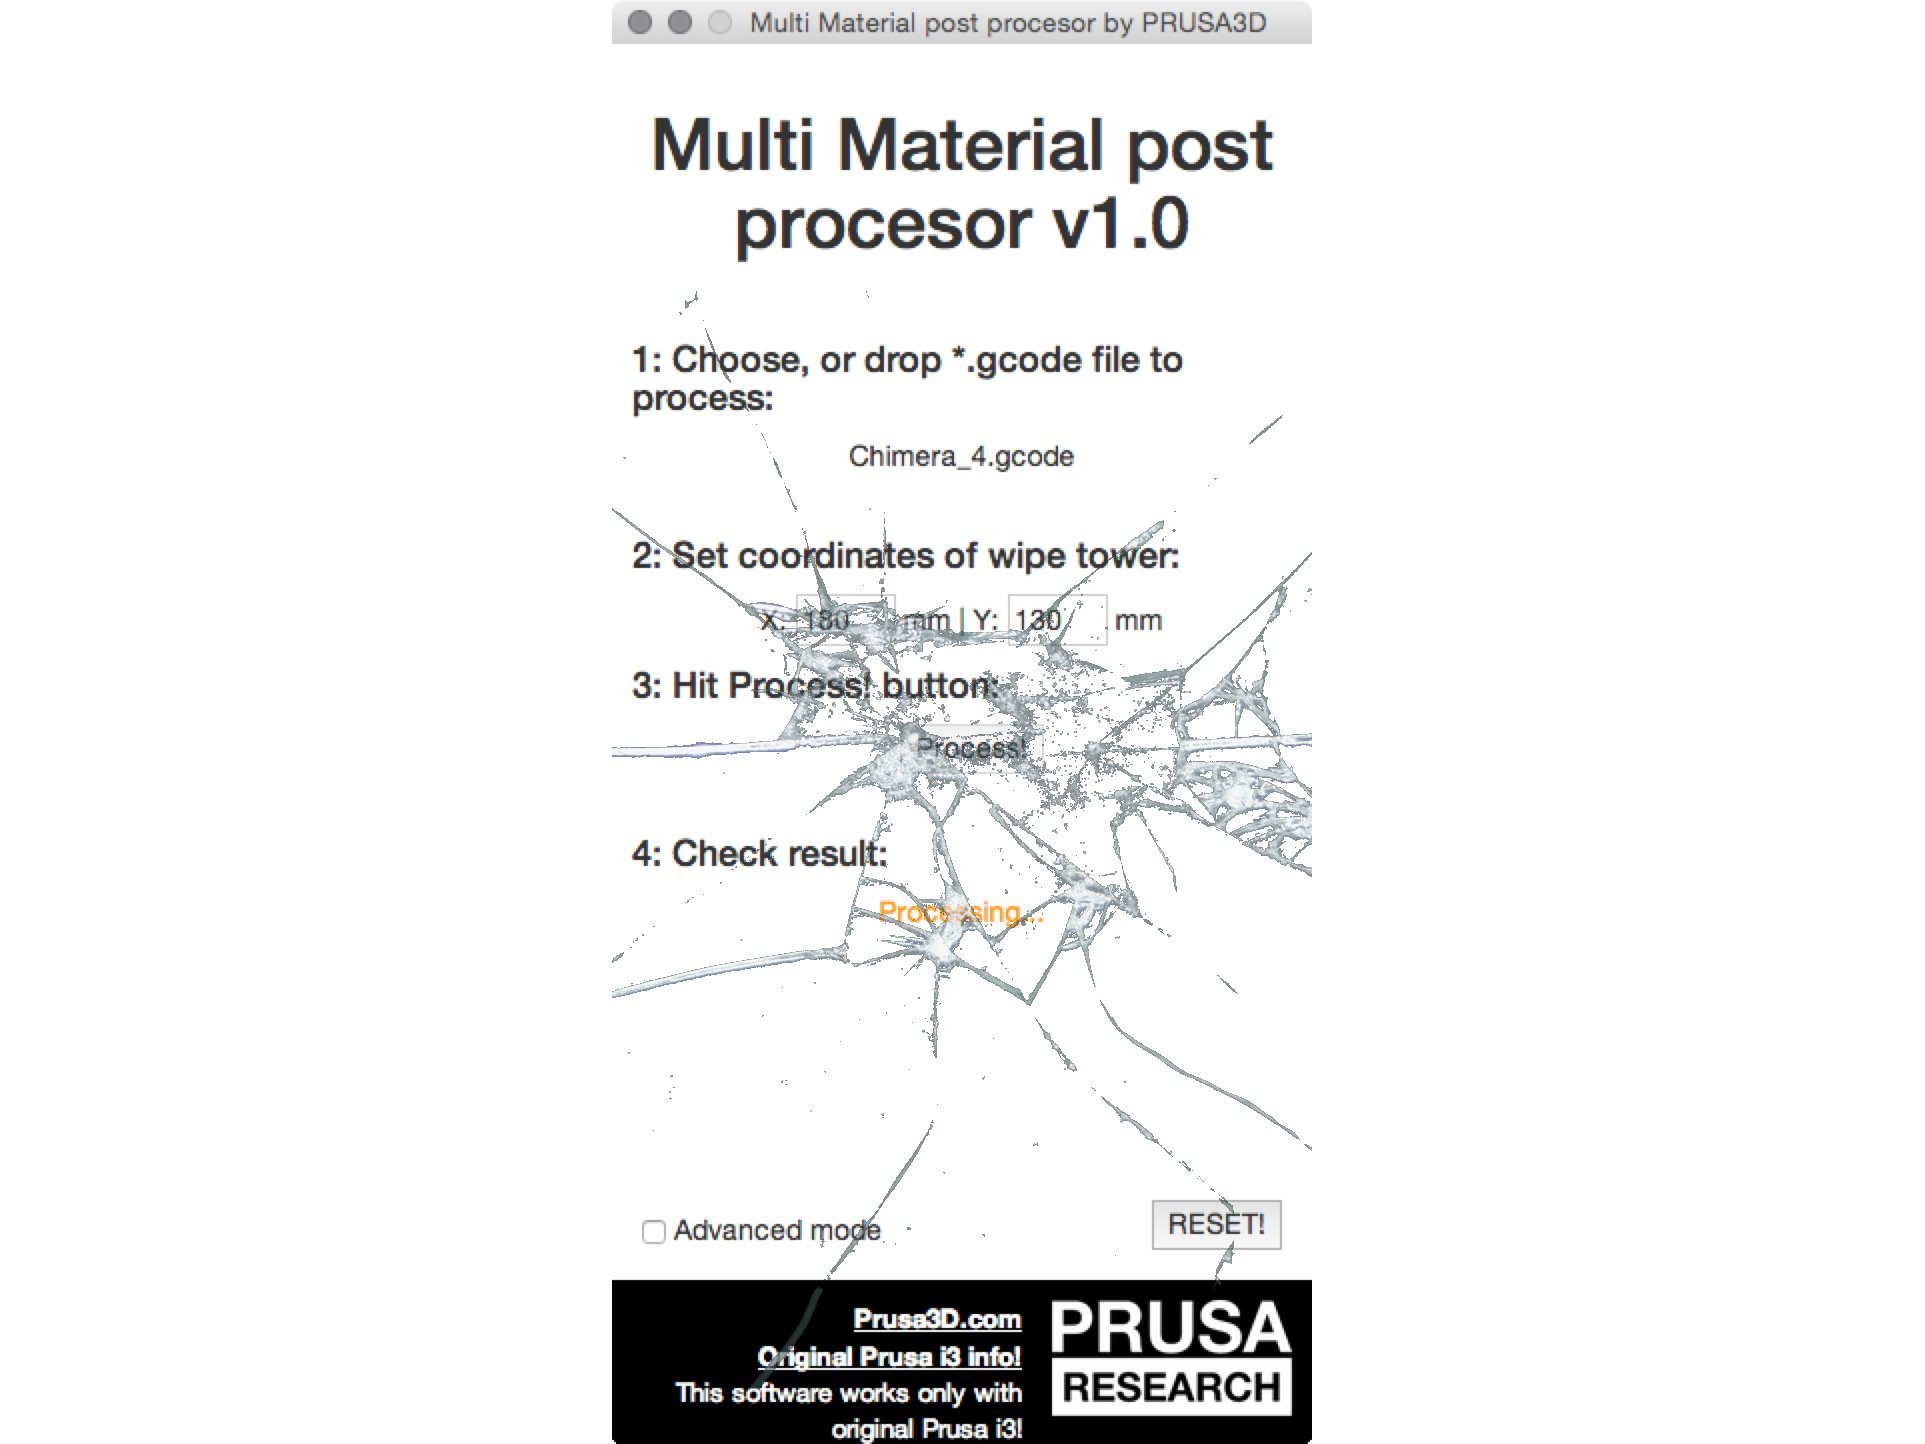 Risoluzione problemi Multi Material Post Processor